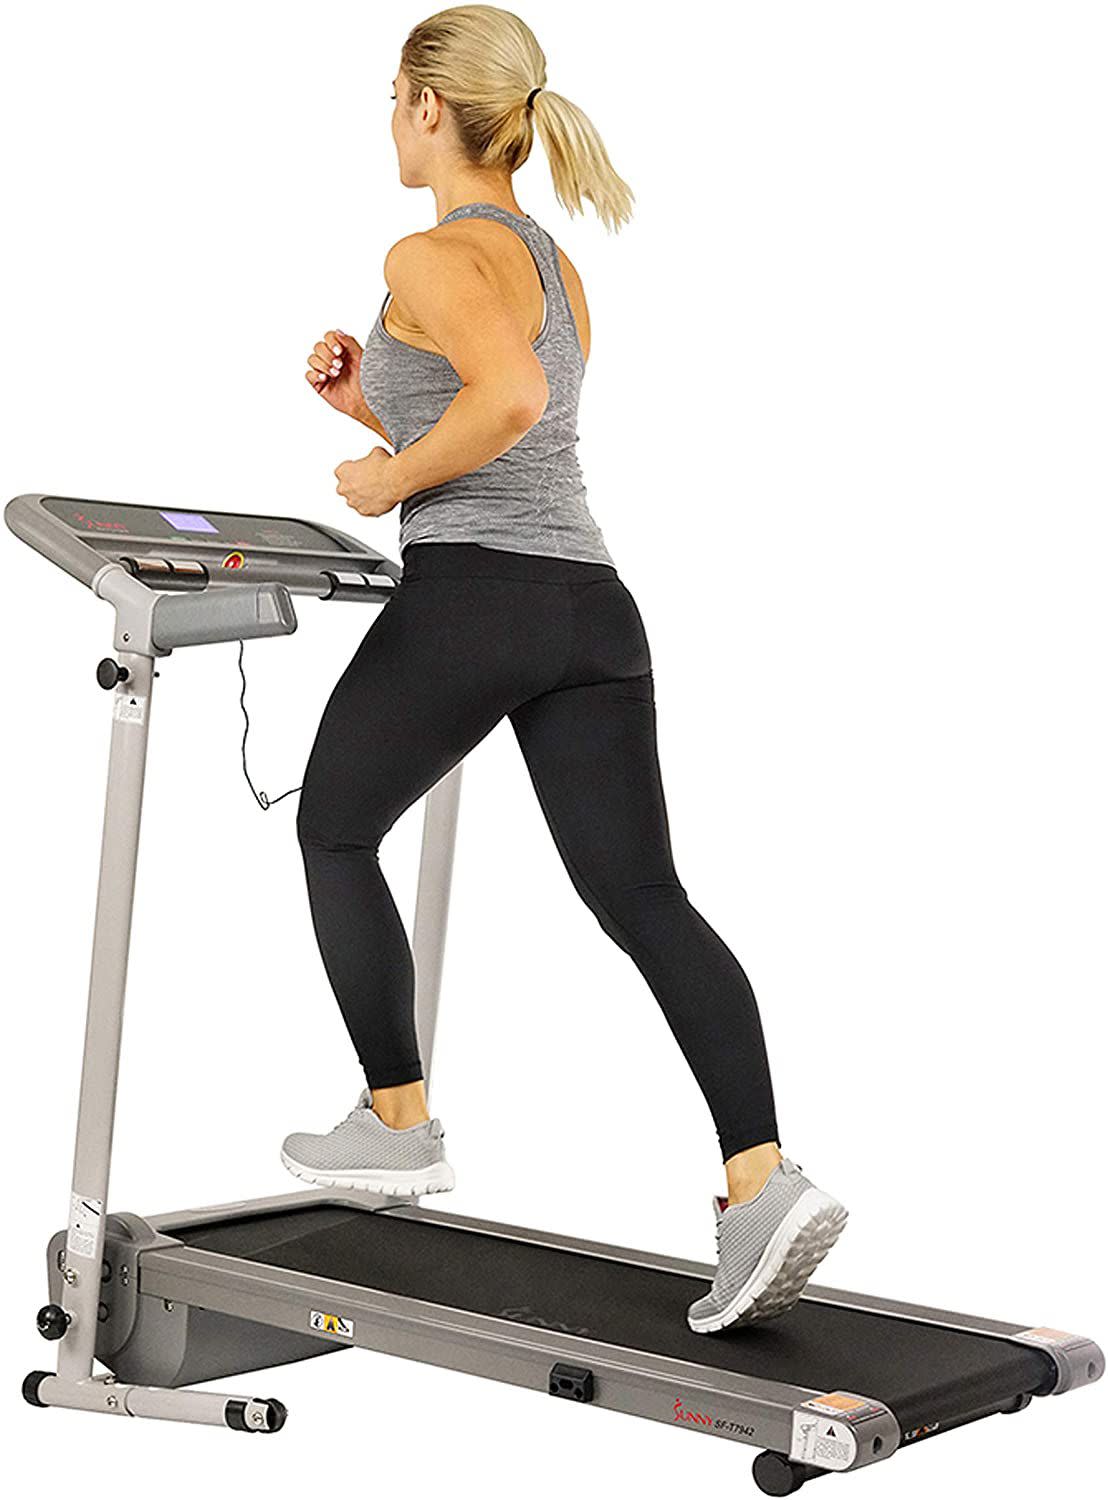 Sunny Health & Fitness Folding Treadmill 